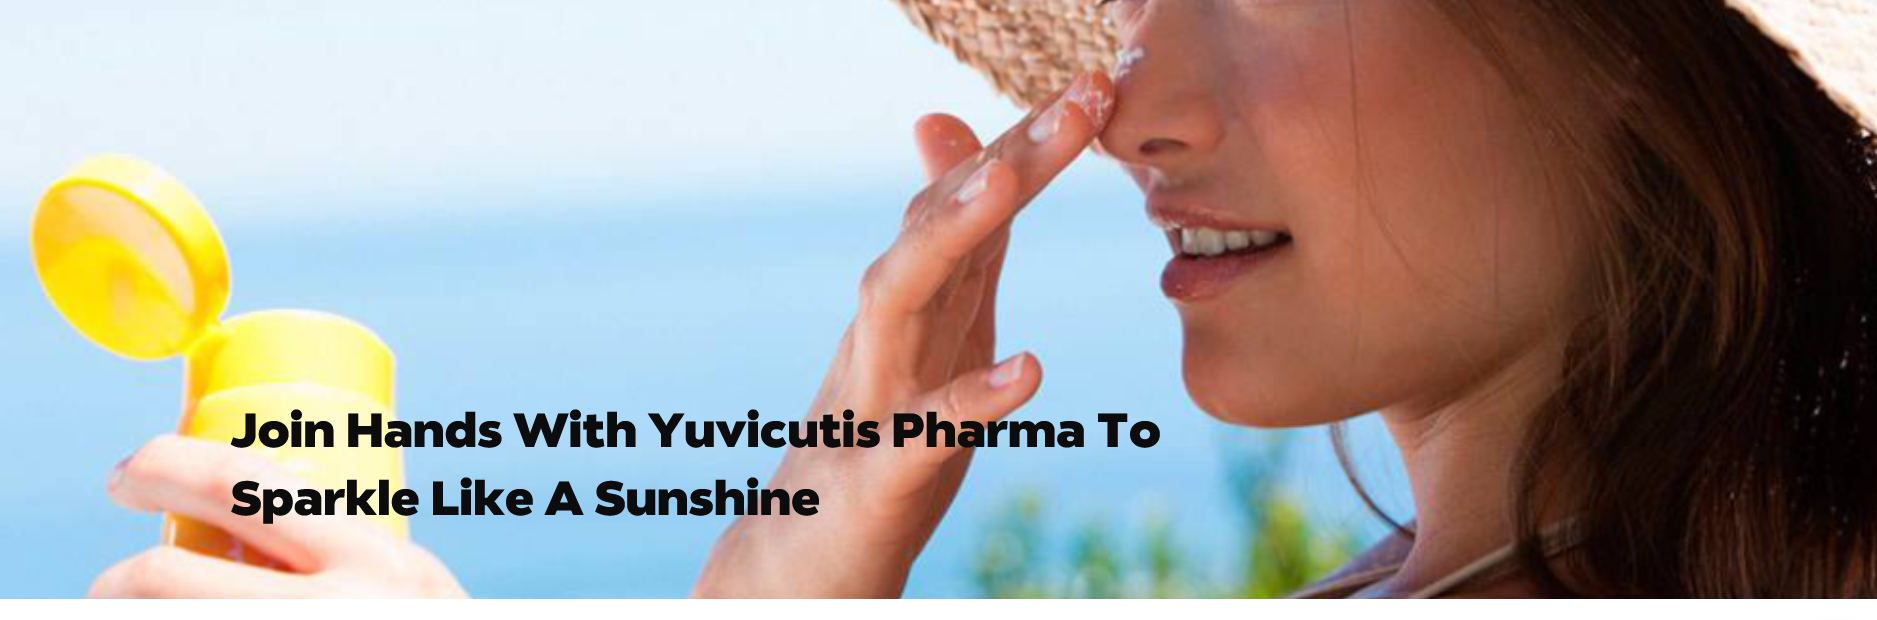 Yuvicutis Pharma 